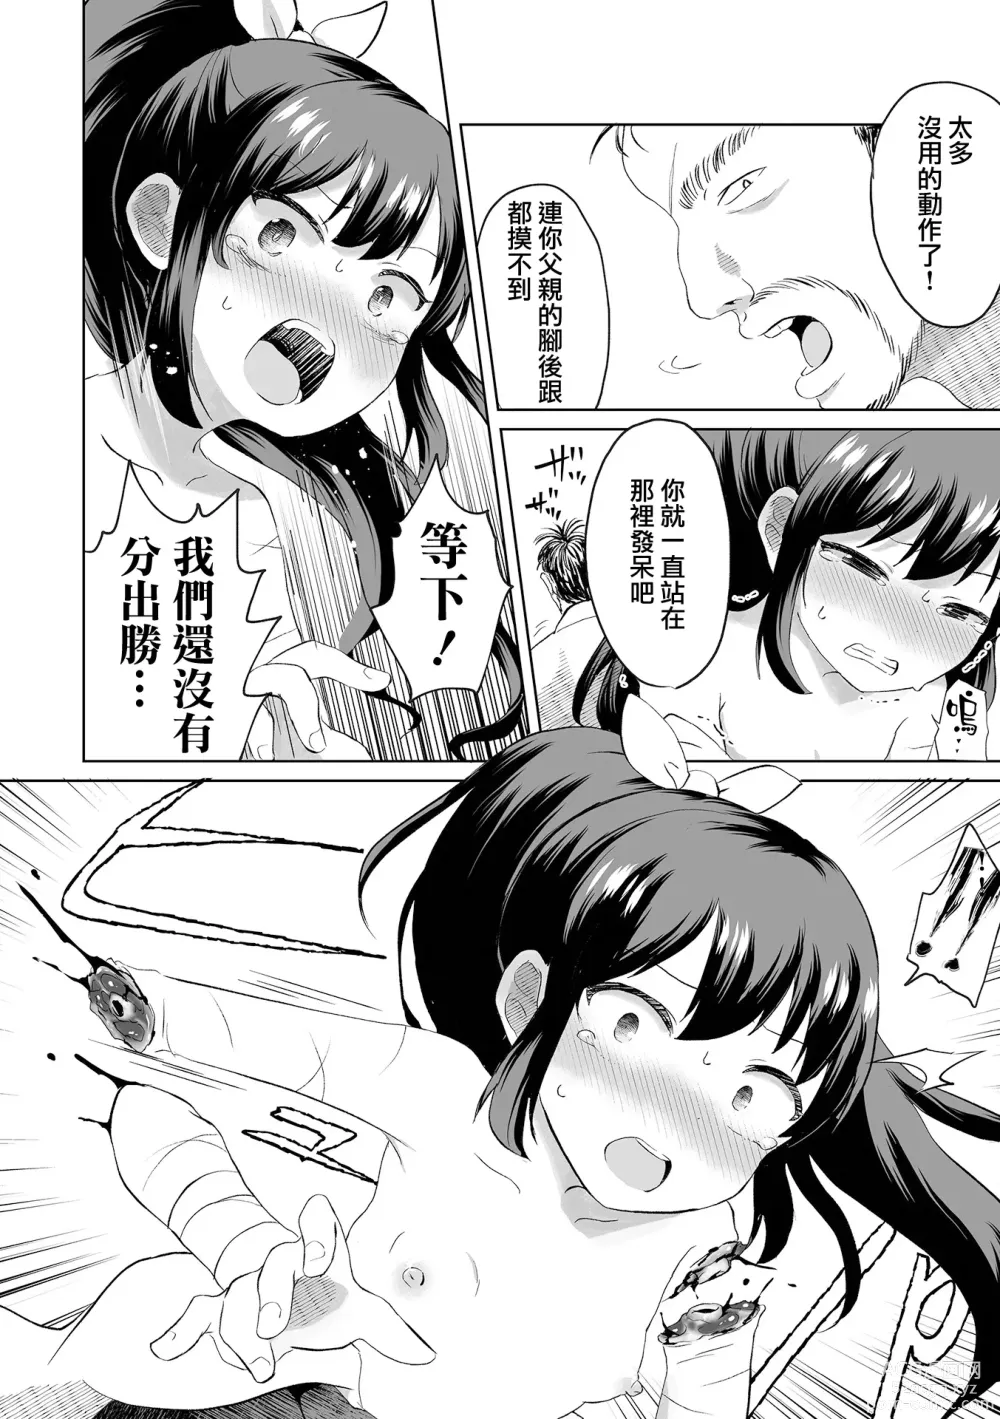 Page 5 of manga Ouka Chiru